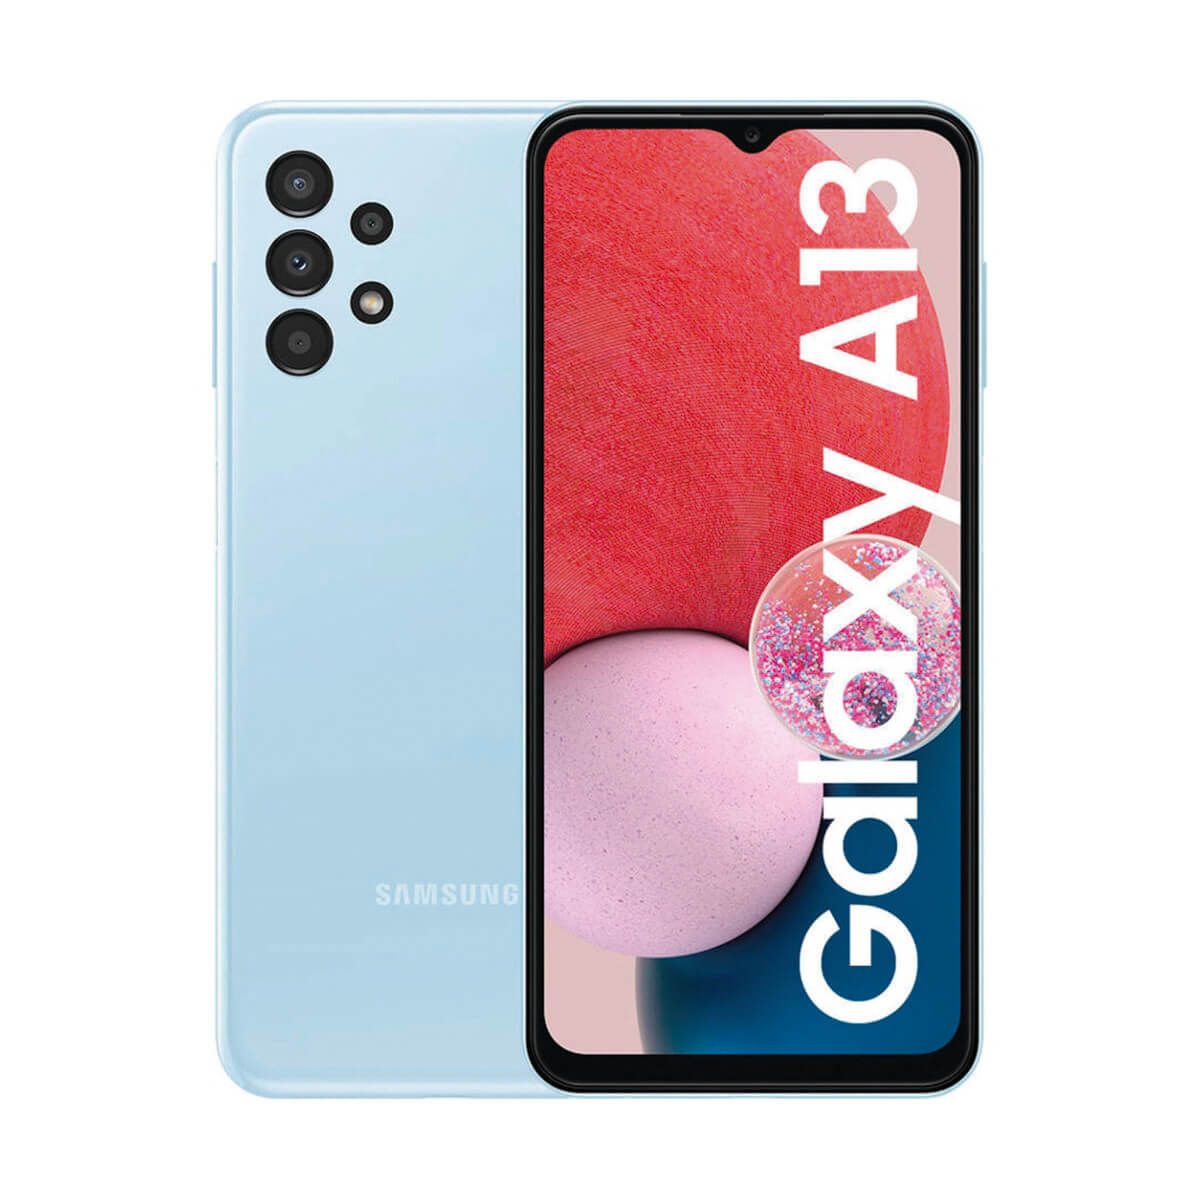 Samsung Galaxy A13 3GB/32GB Blue (Light Blue) Dual SIM A137